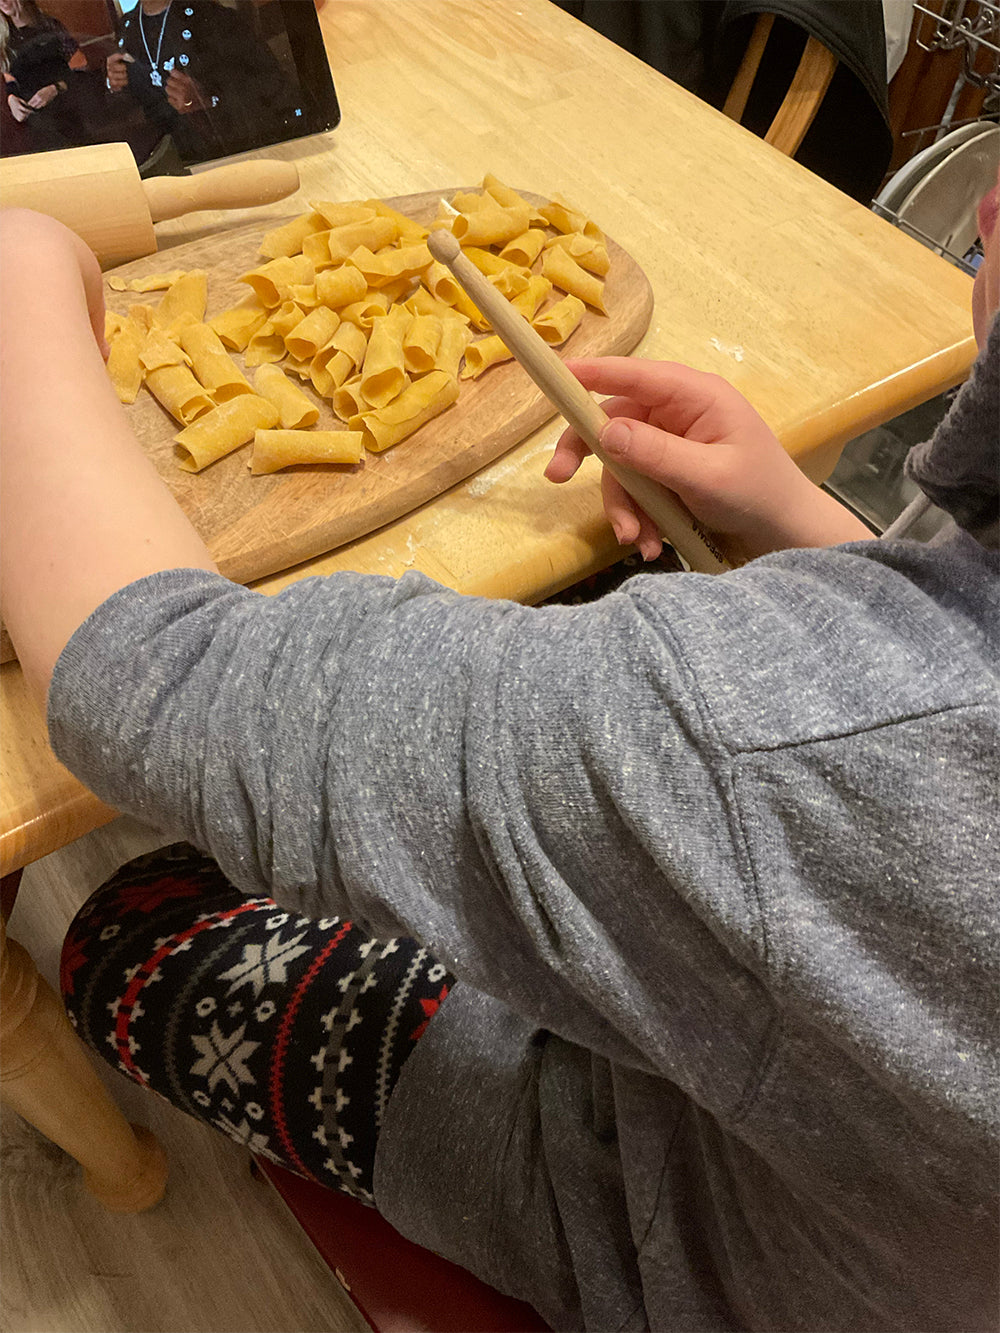 Making pasta, homemade pasta